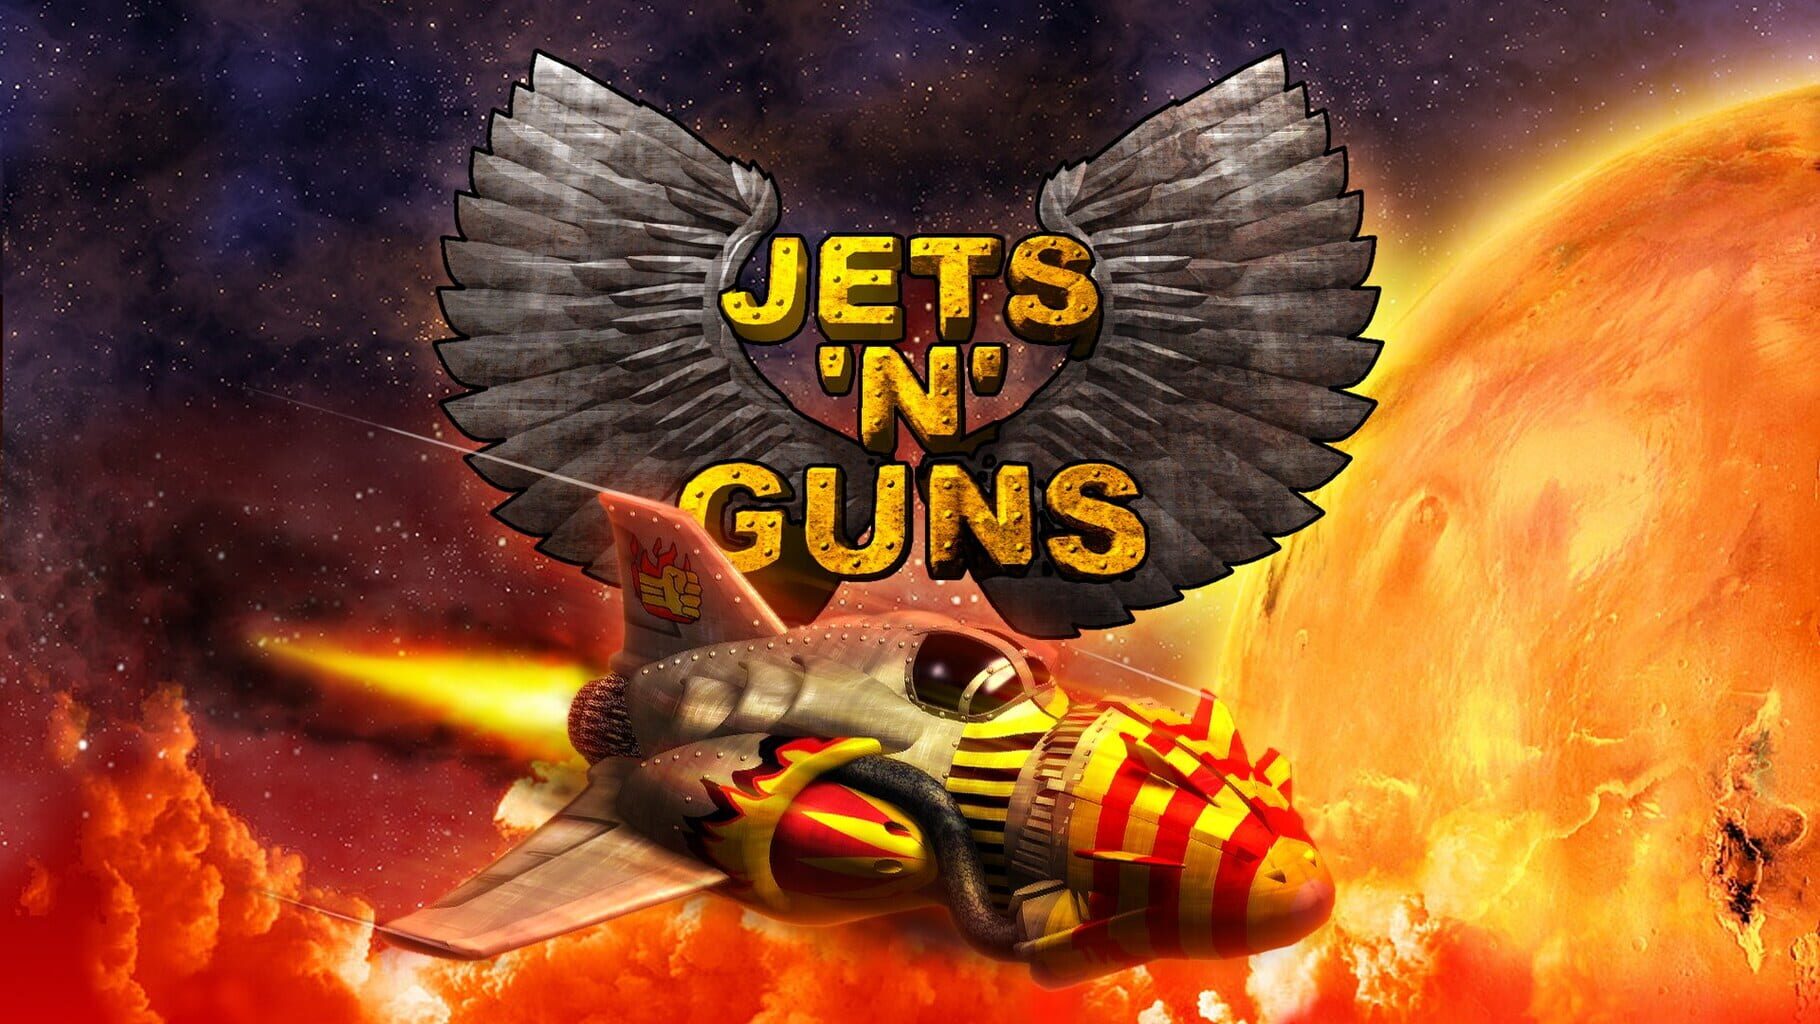 Jets'n'Guns artwork